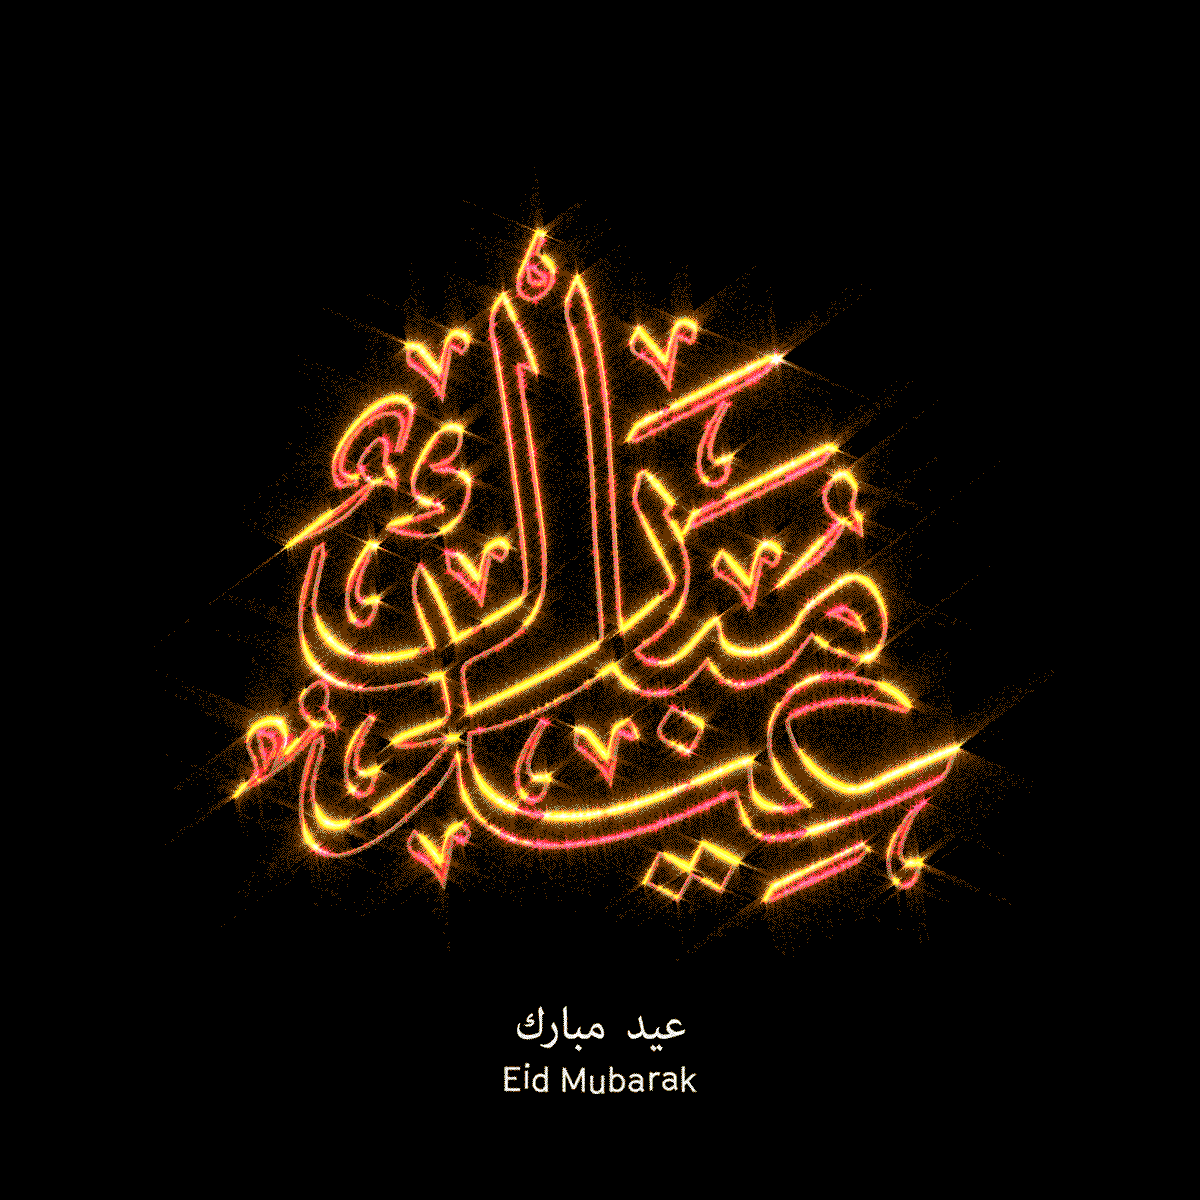 New Eid Mubarak Gif - 1200x1200 Wallpaper 